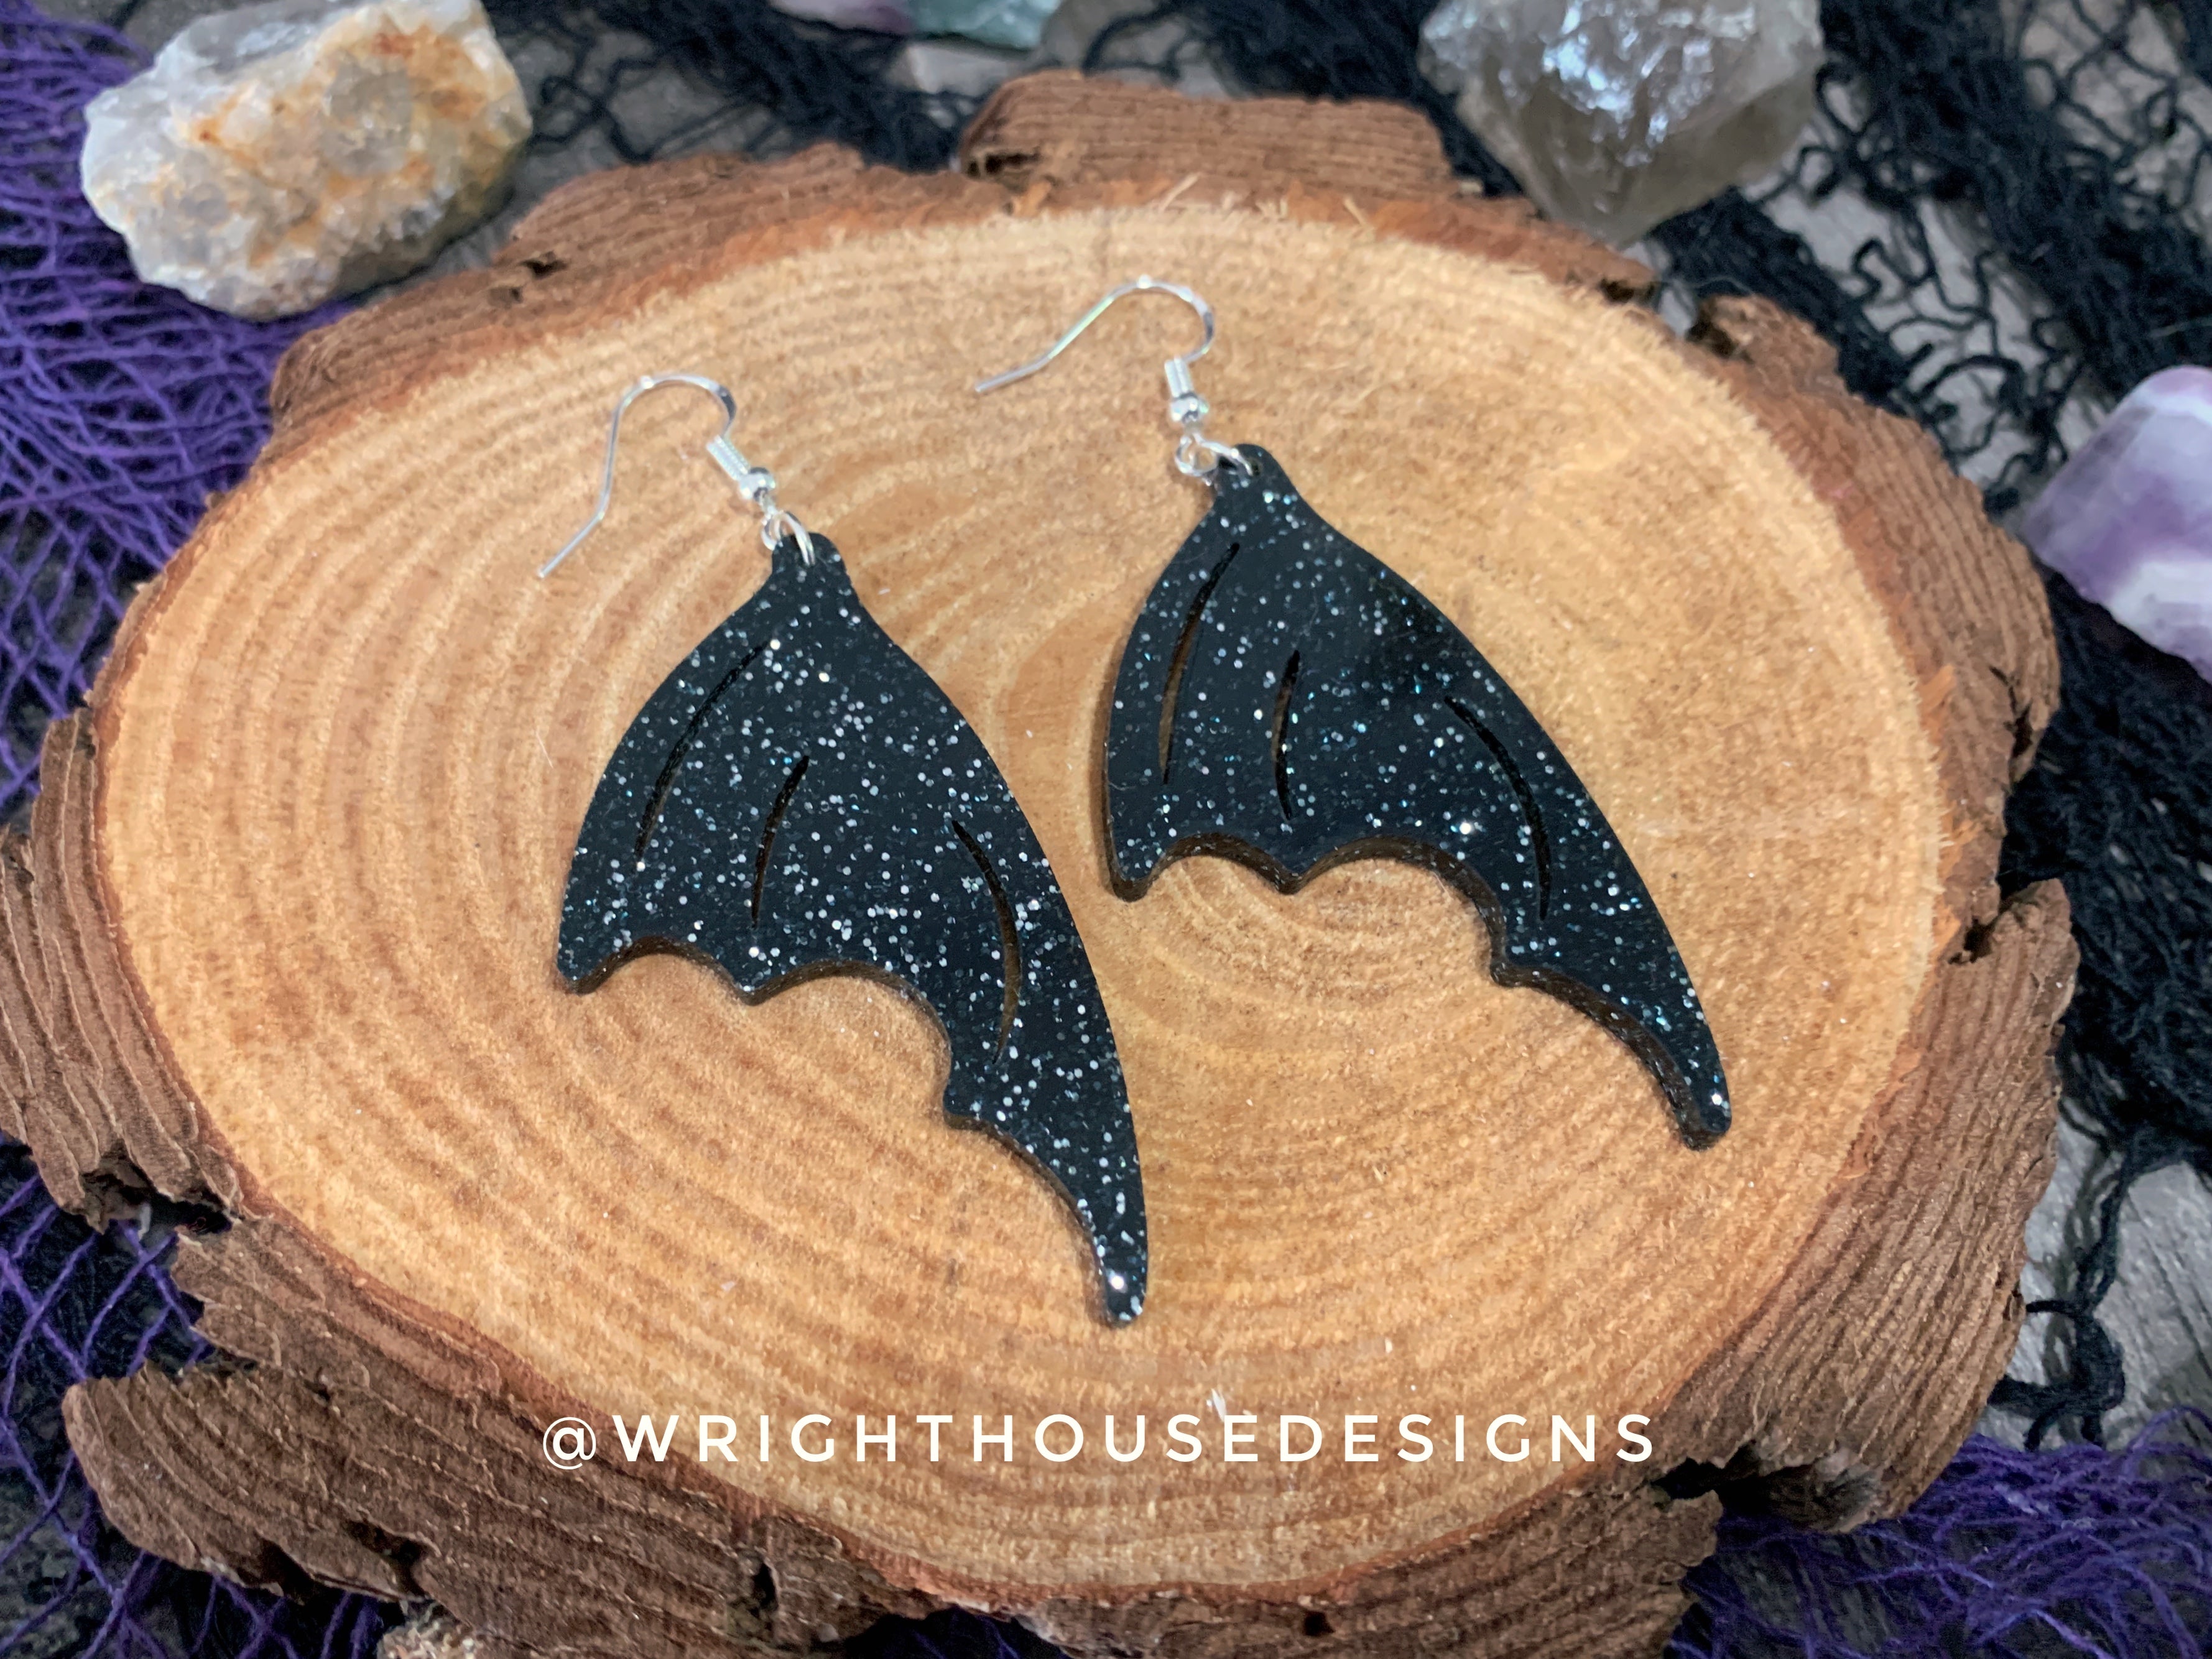 Witchy Glitter Bat Wings - Cut Halloween Earrings - Glitter Black Acrylic Handmade Jewelry